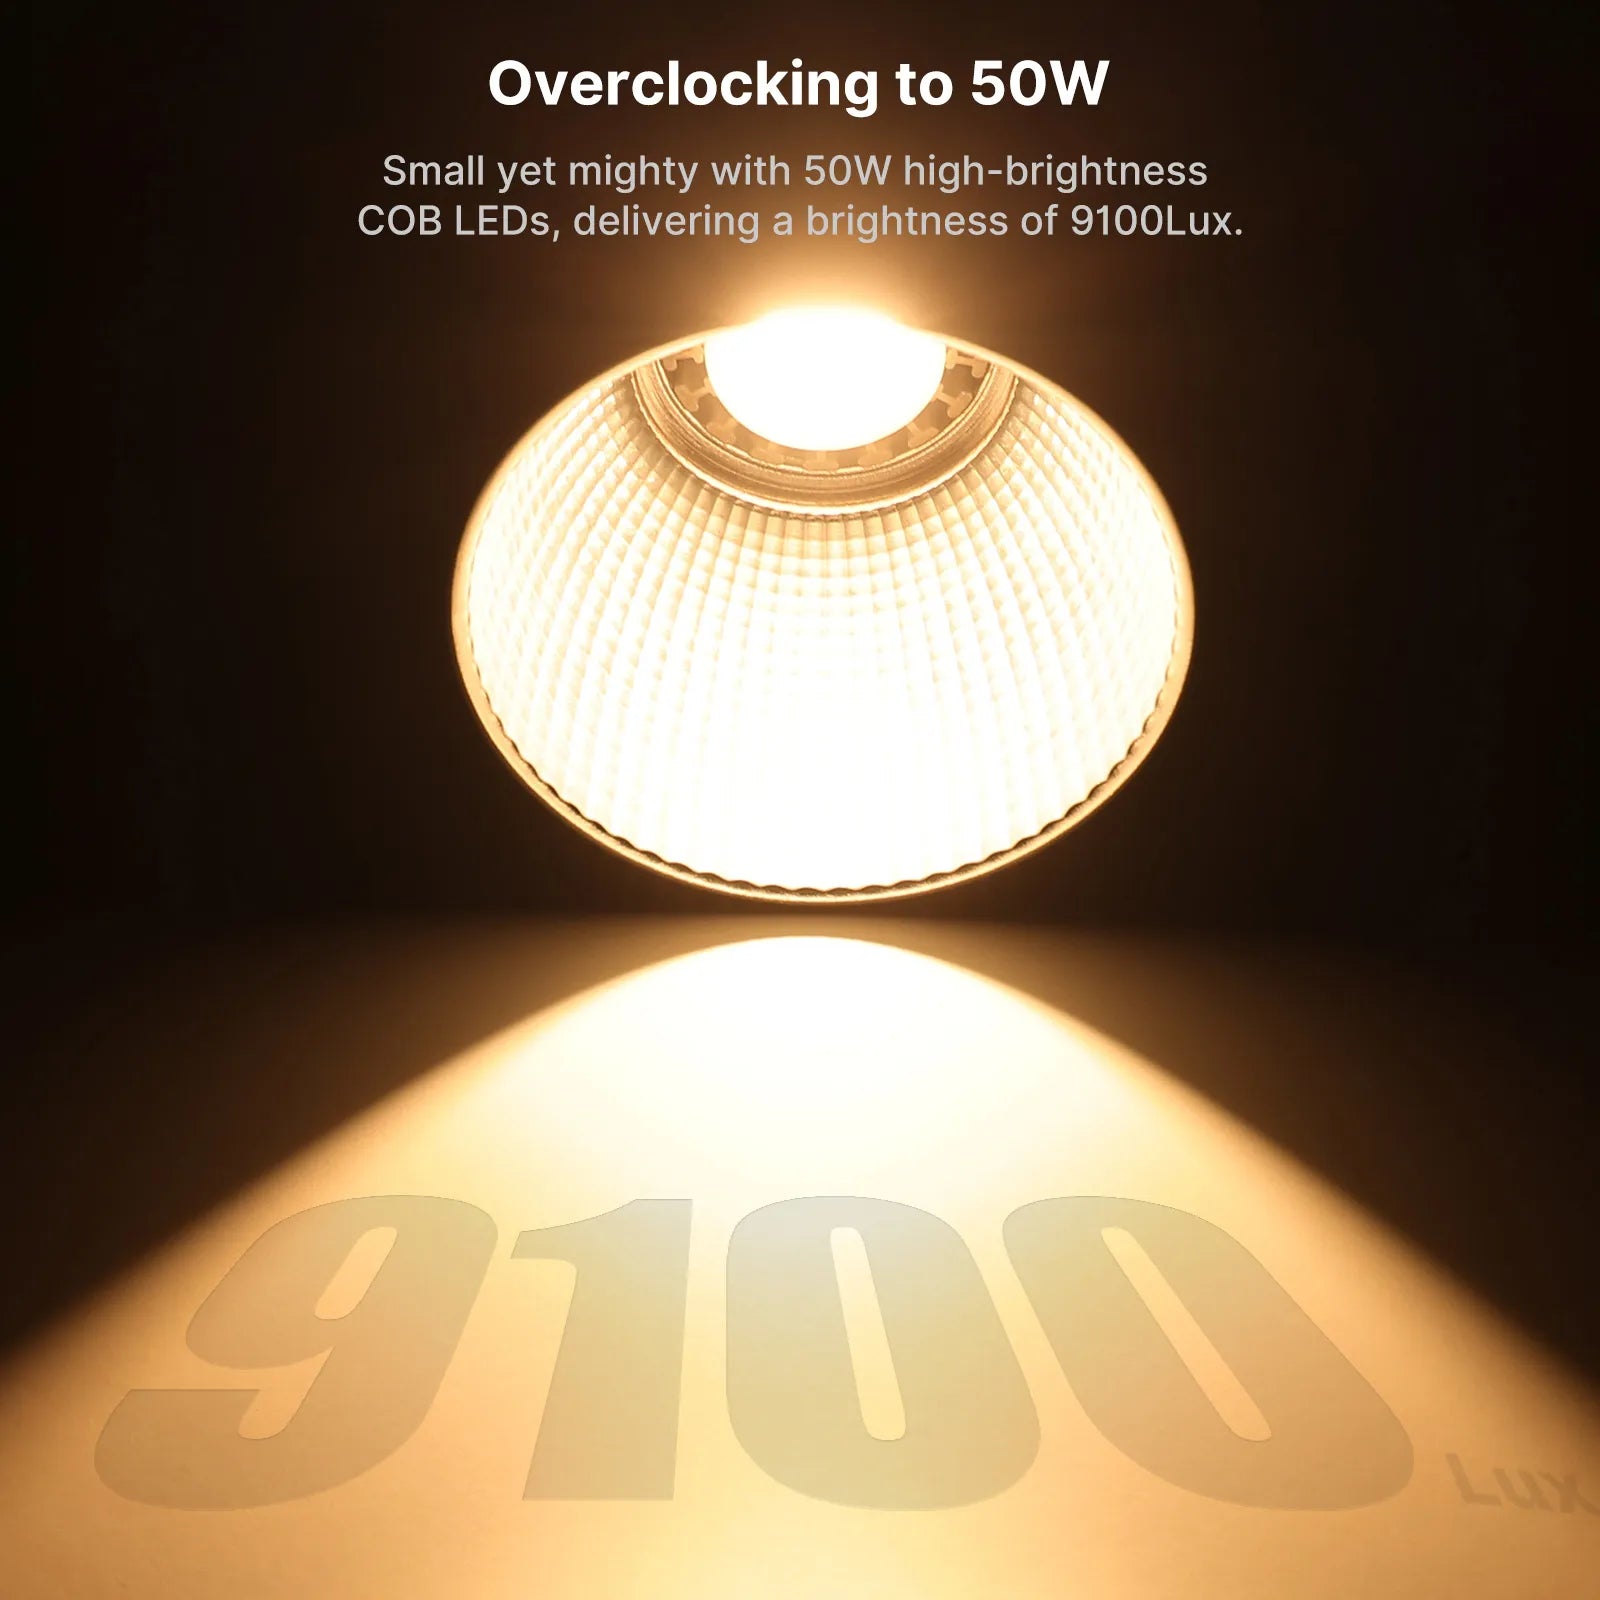 50W high-brightness COB LEDs